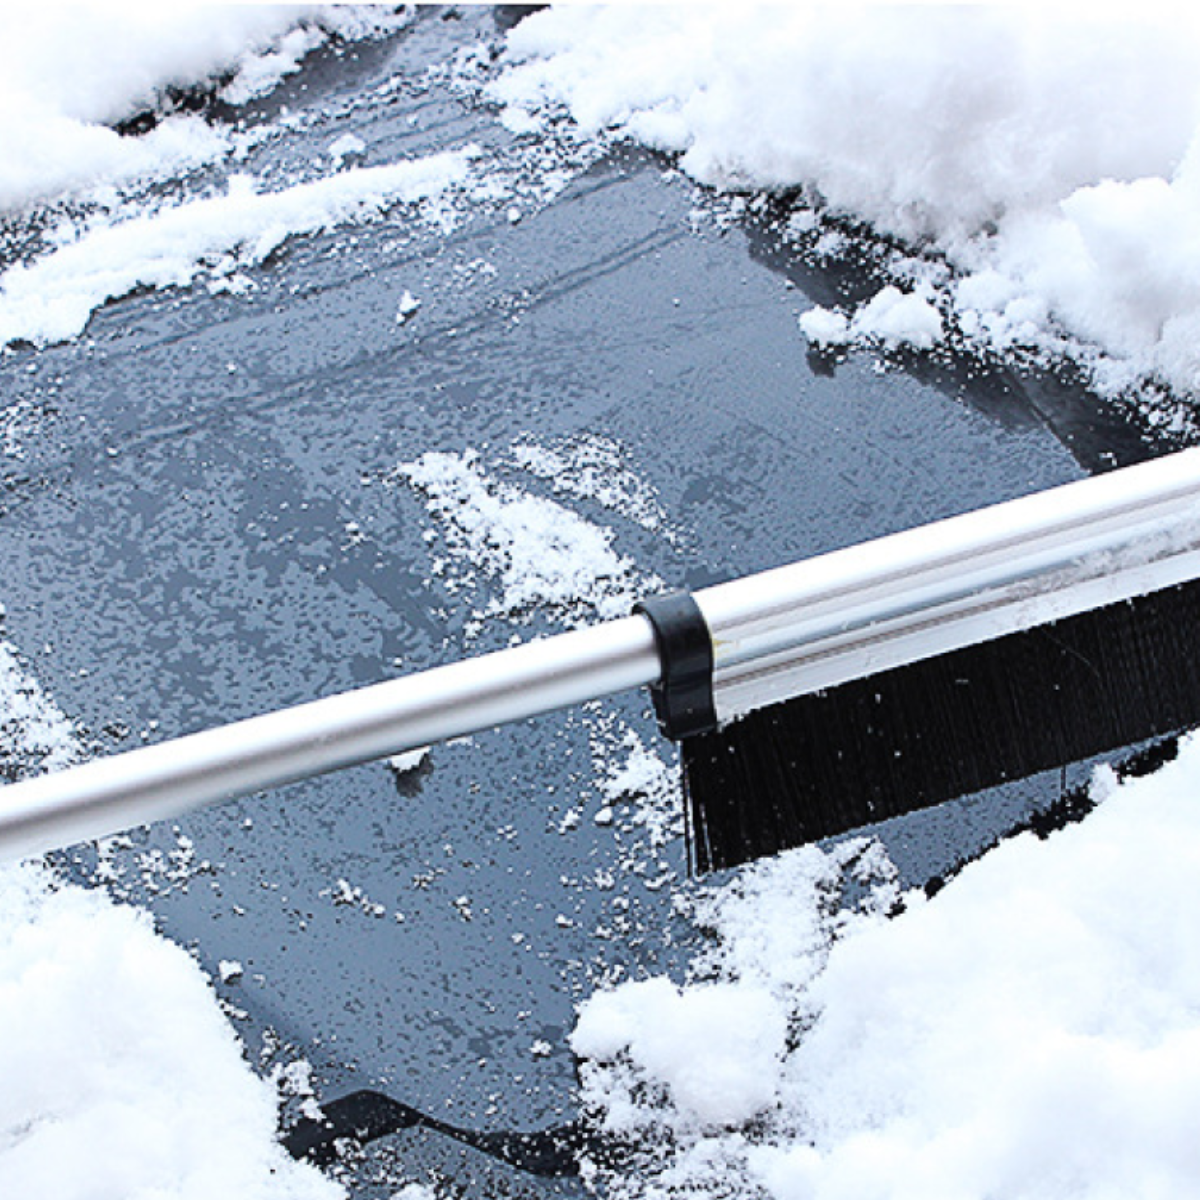 『雪対策』多機能 除雪ブラシ 伸縮式アルミハンドル付雪かき｜車の中に1セットあるだけで、安心して外出できる！|undefined